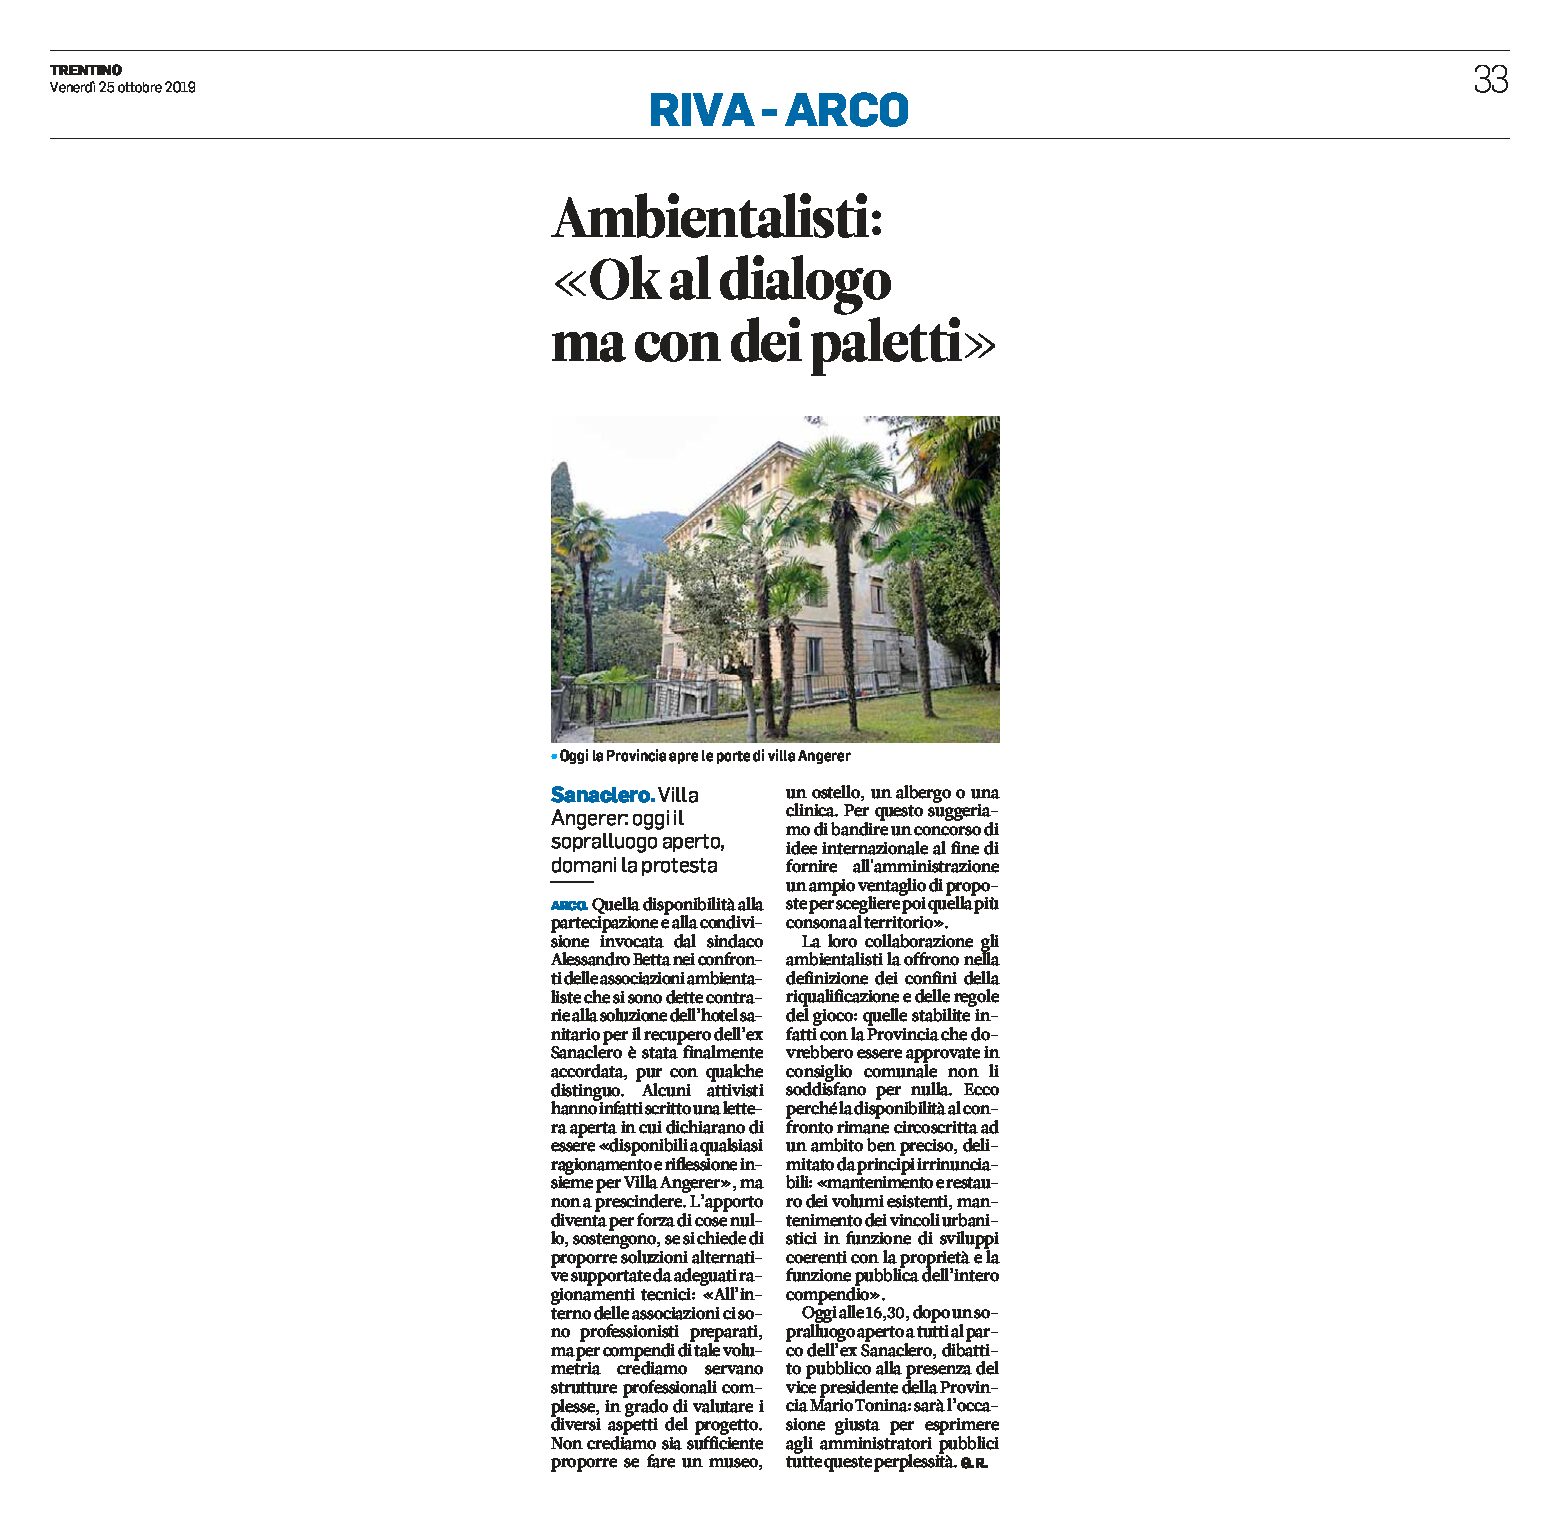 Arco, villa Angerer: ambientalisti “ok al dialogo ma con dei paletti”